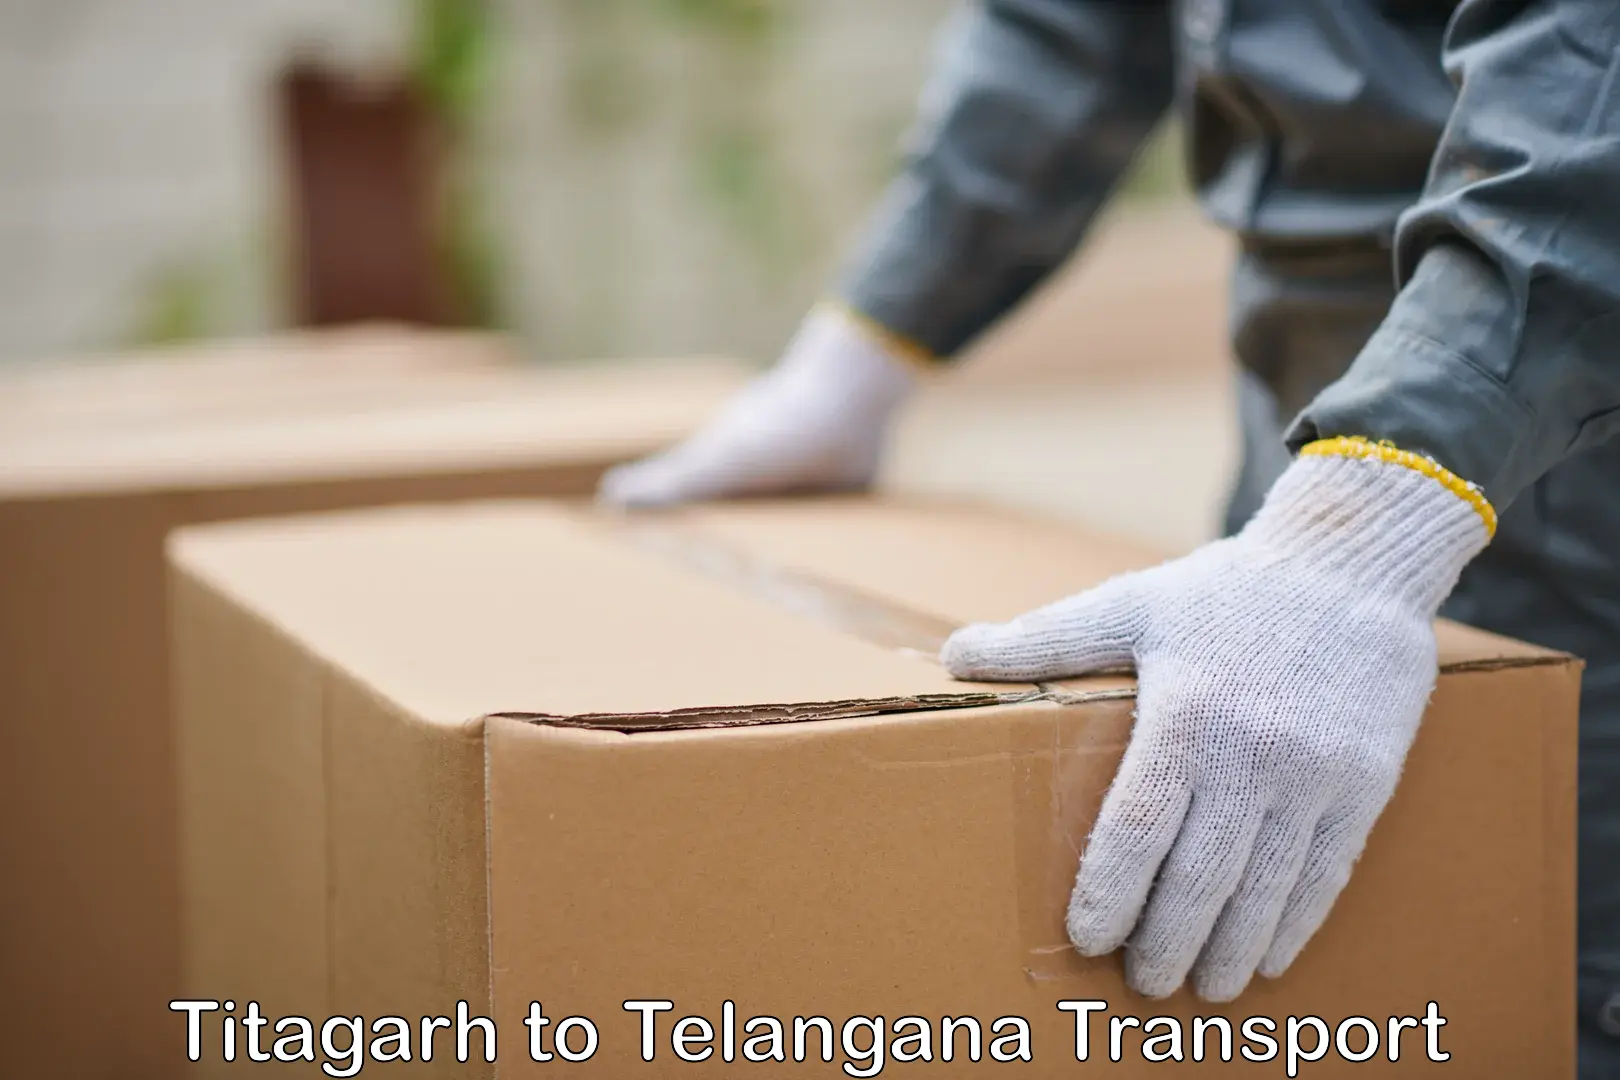 Delivery service Titagarh to Bhuvanagiri